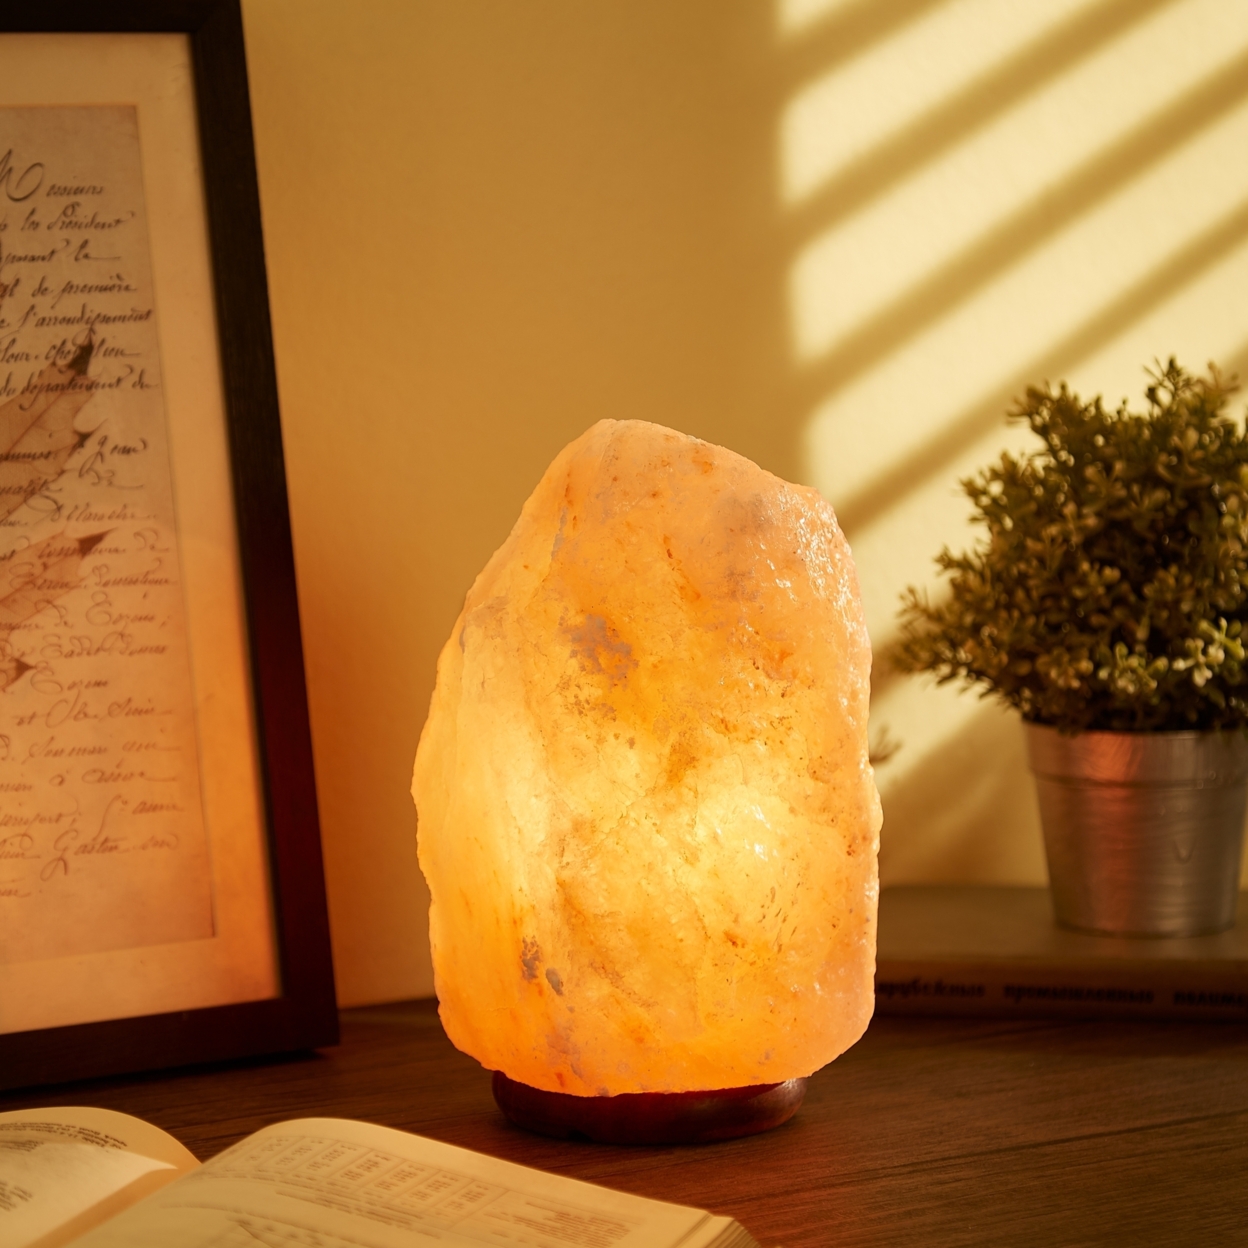 Shira Salt Lamp - Dimmable Light ,Authentic Himalayan Salt Crystal , Natural Materials, Providing Health Benefits